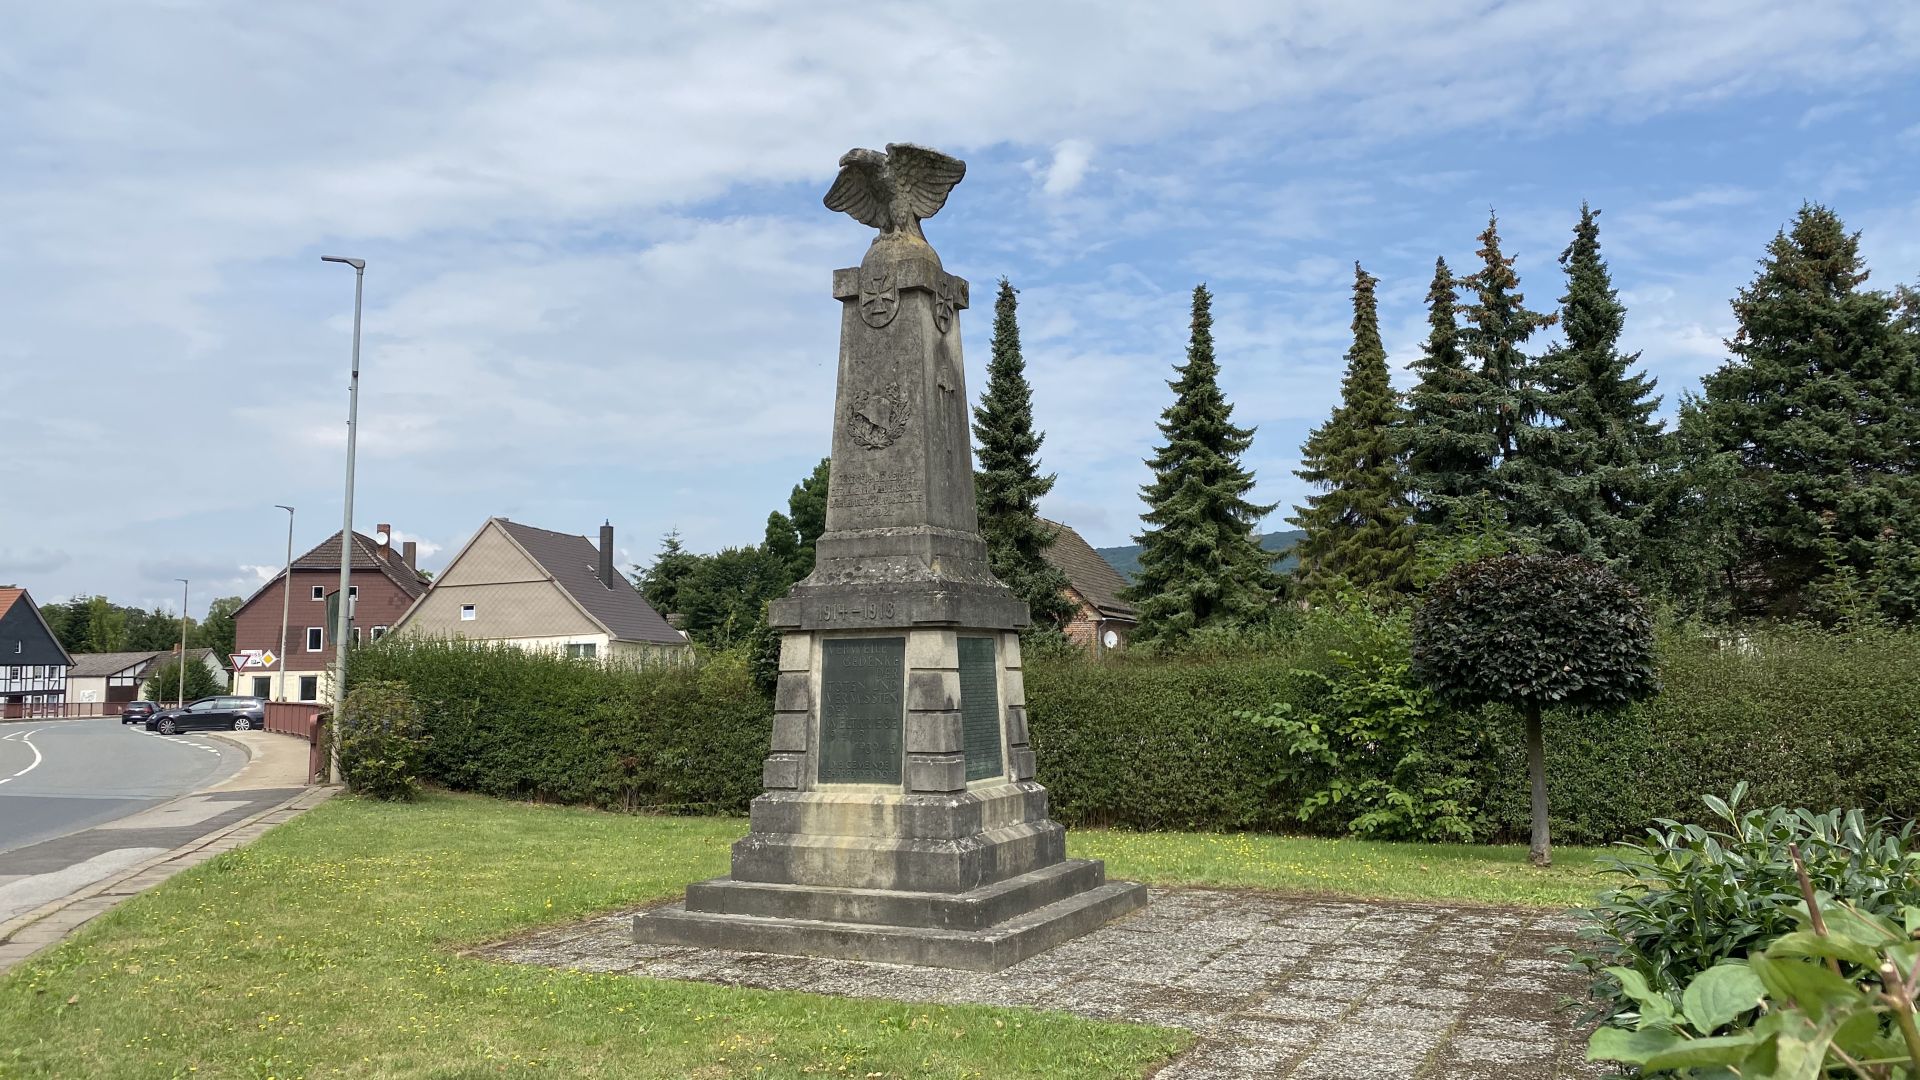 Kriegerdenkmal von 1921 in Eschershausen, Ortsteil ScharfoldendorfKriegerdenkmal von 1921 in Eschershausen, Ortsteil Scharfoldendorf, mit der Tafel der Gefallenen des Ersten Weltkrieges